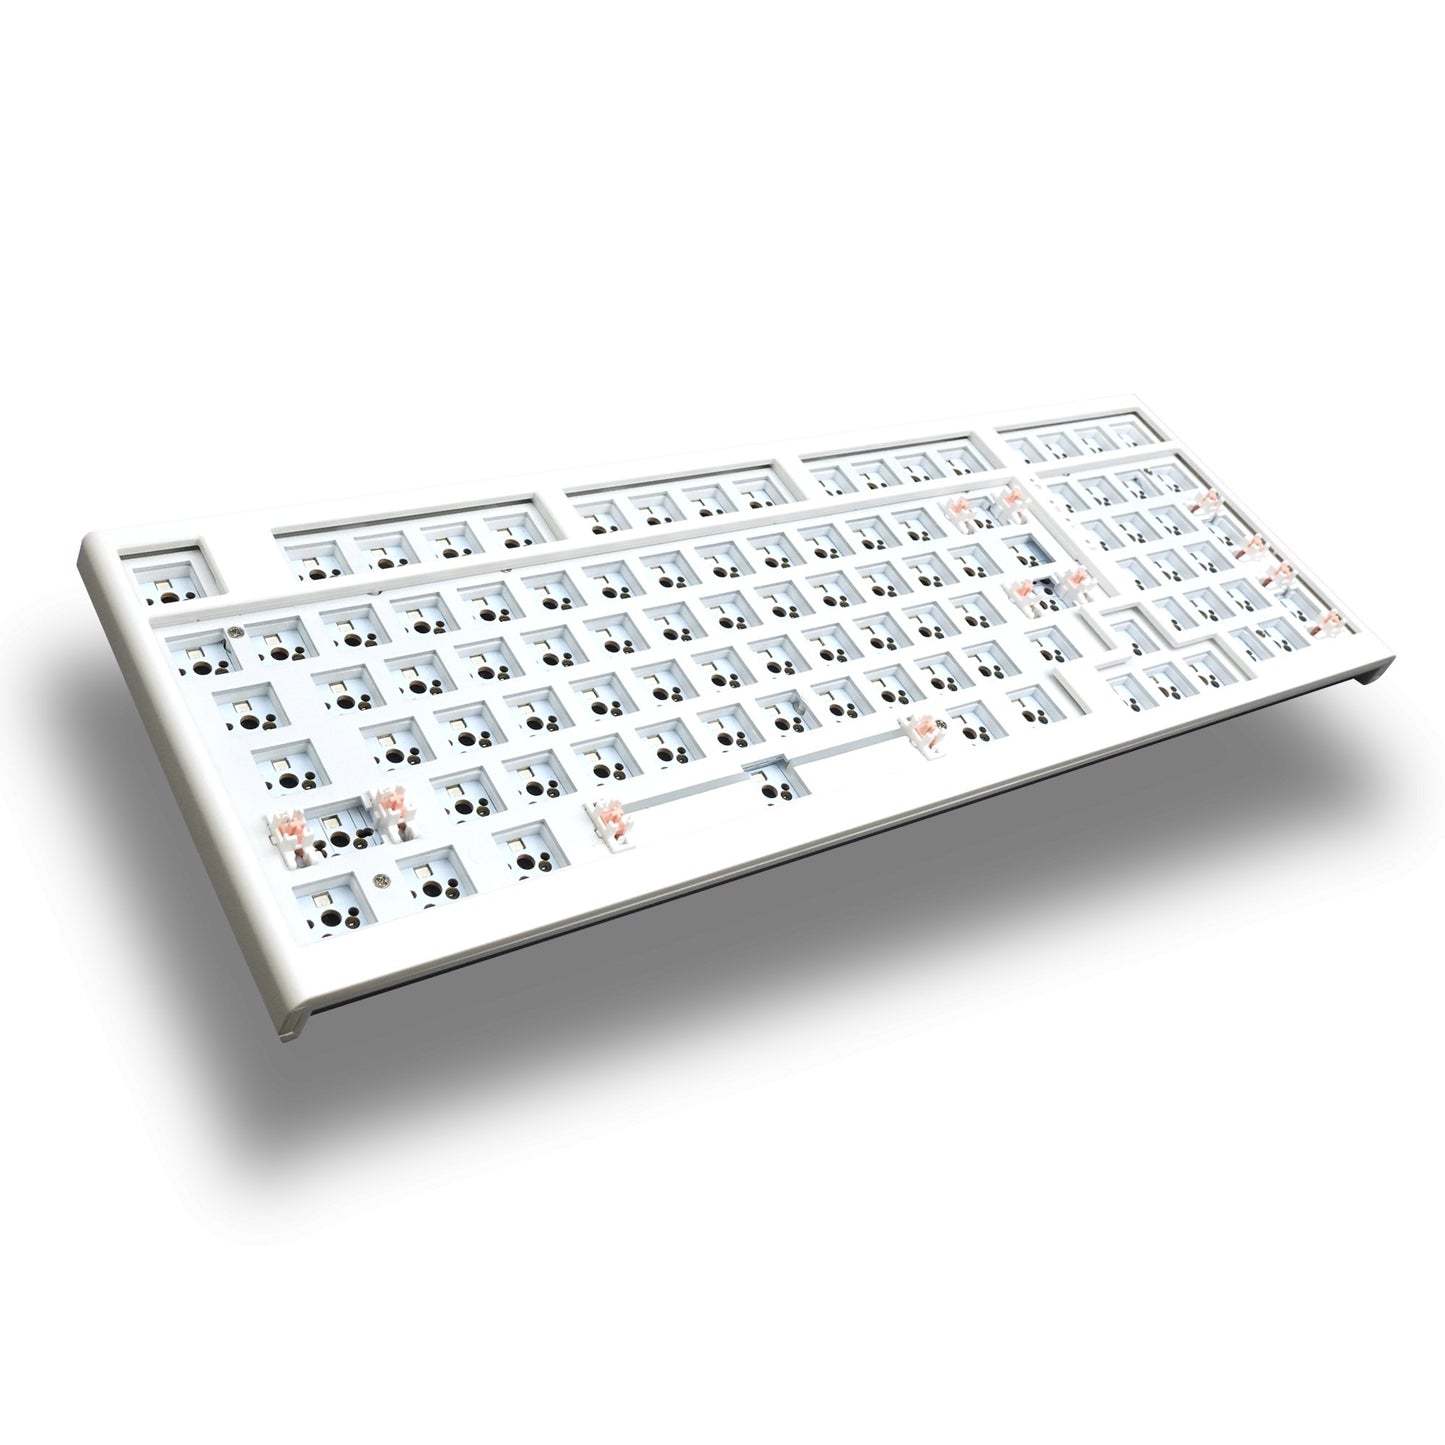 Alpha 98 96% Wireless Mechanical Keyboard Barebone Kit - Goblintechkeys